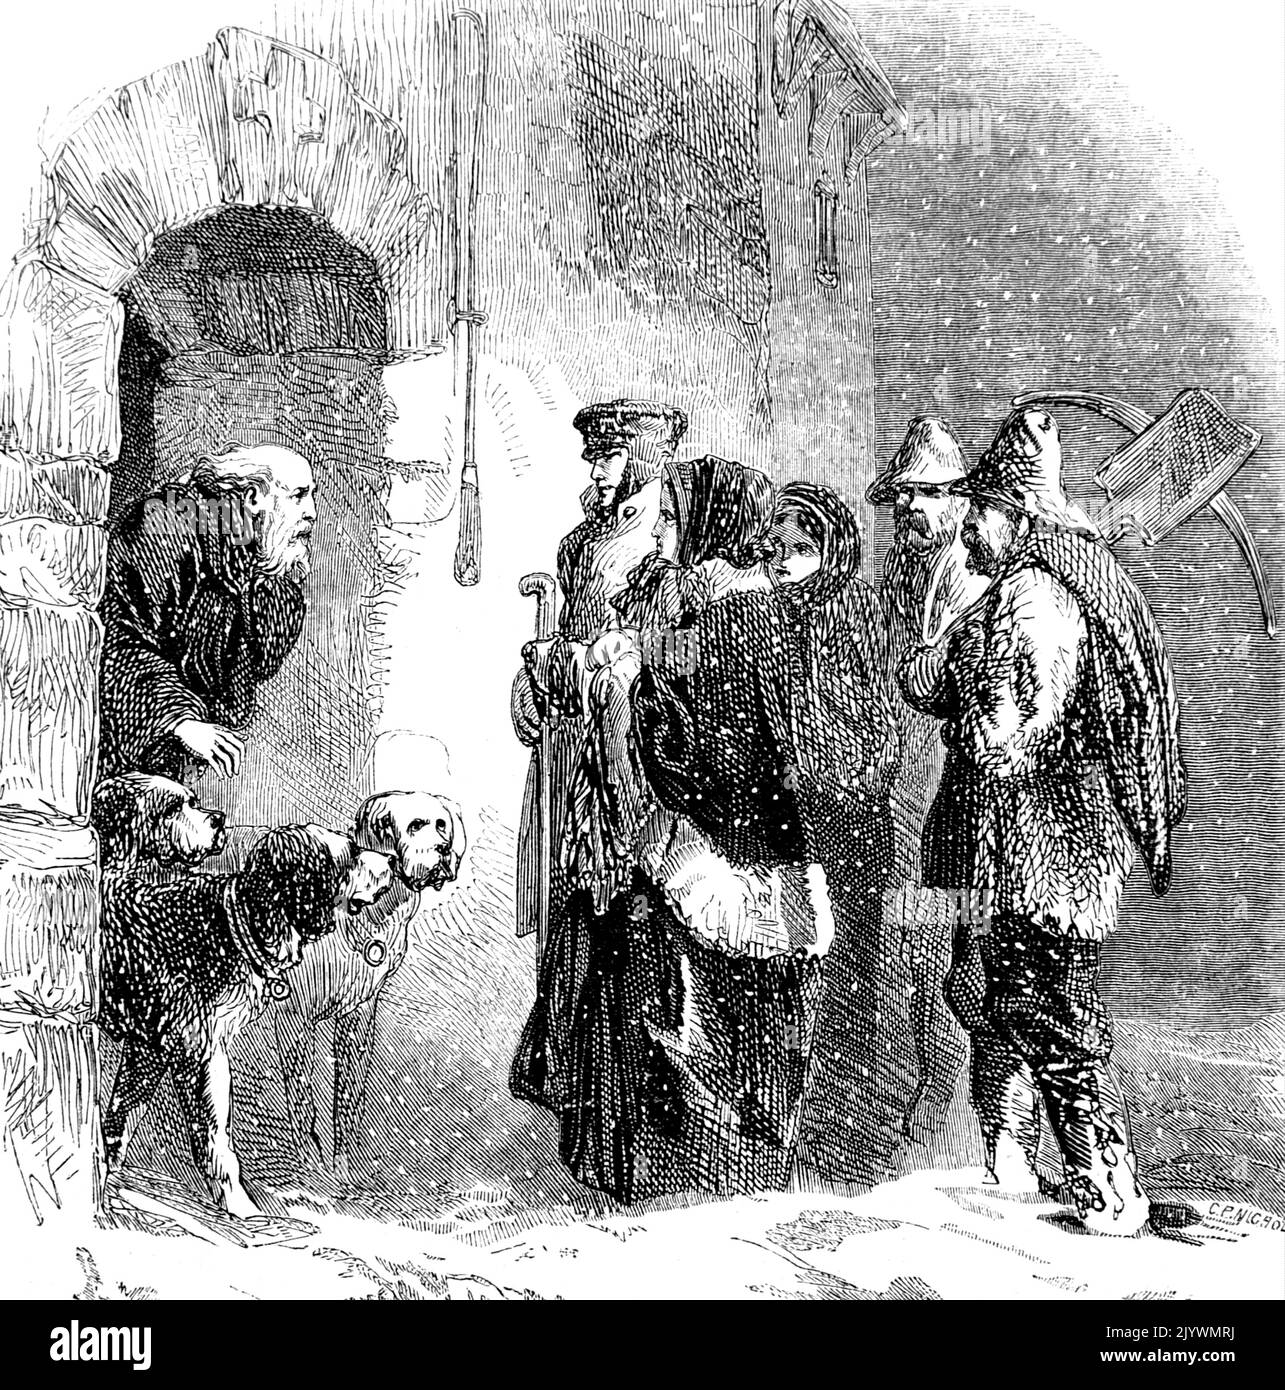 Illustrazione raffigurante una scena al di fuori dell'Ospizio di San Bernardo, dove i viaggiatori chiedono rifugio. Datato 19th ° secolo Foto Stock